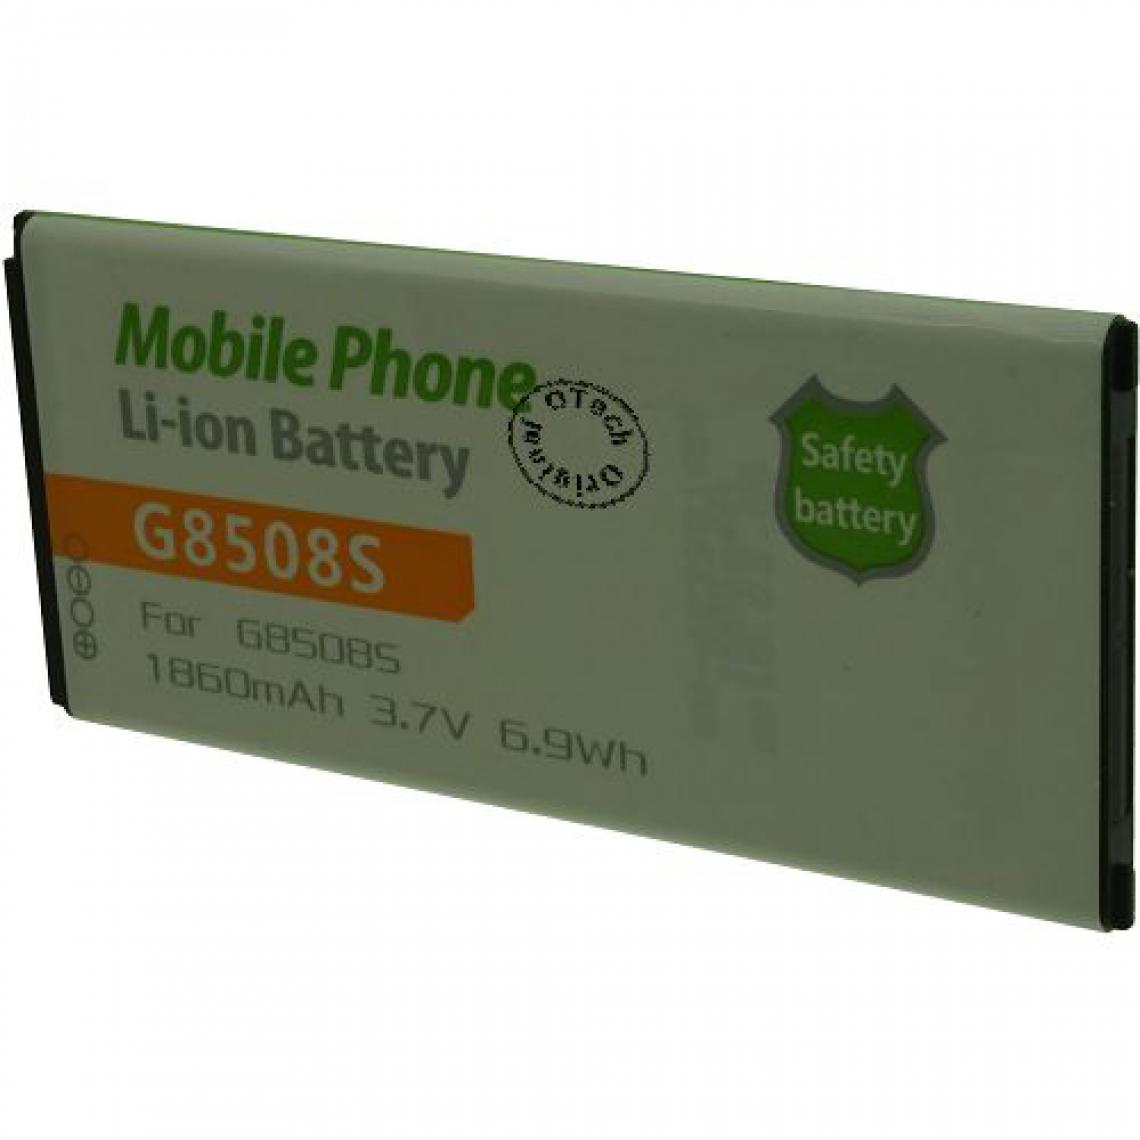 Otech - Batterie compatible pour SAMSUNG G8508S - Batterie téléphone